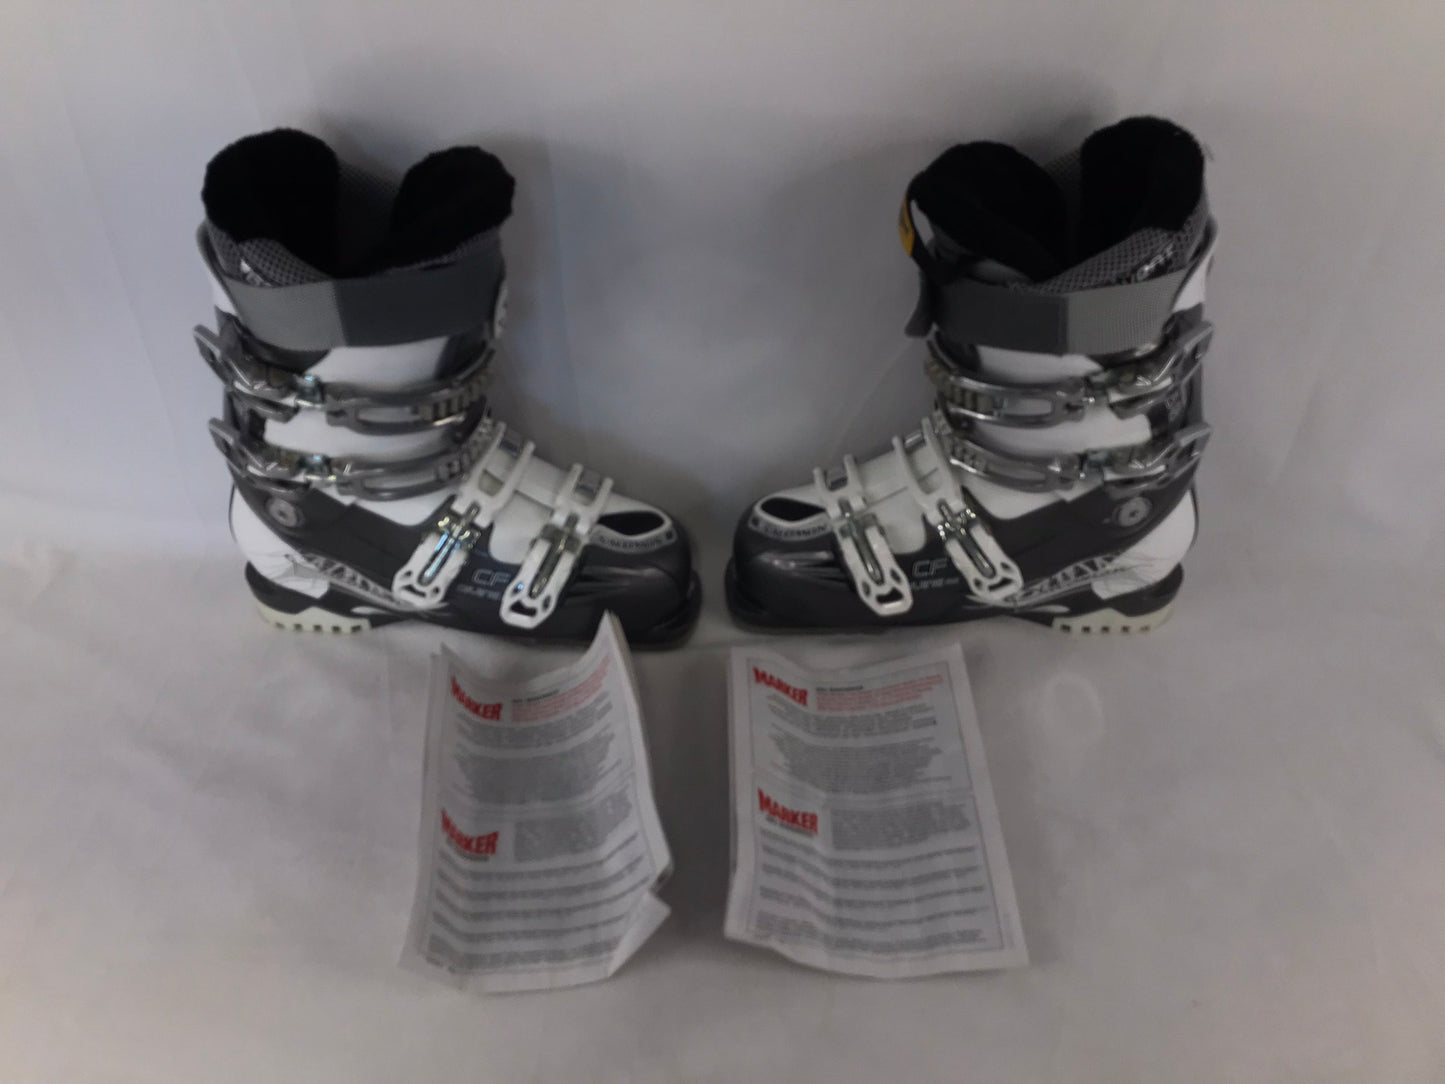 Ski Boots Mondo Size 25.0 Ladies Size 8 298 mm Salomon Energizer Grey White New Demo Model